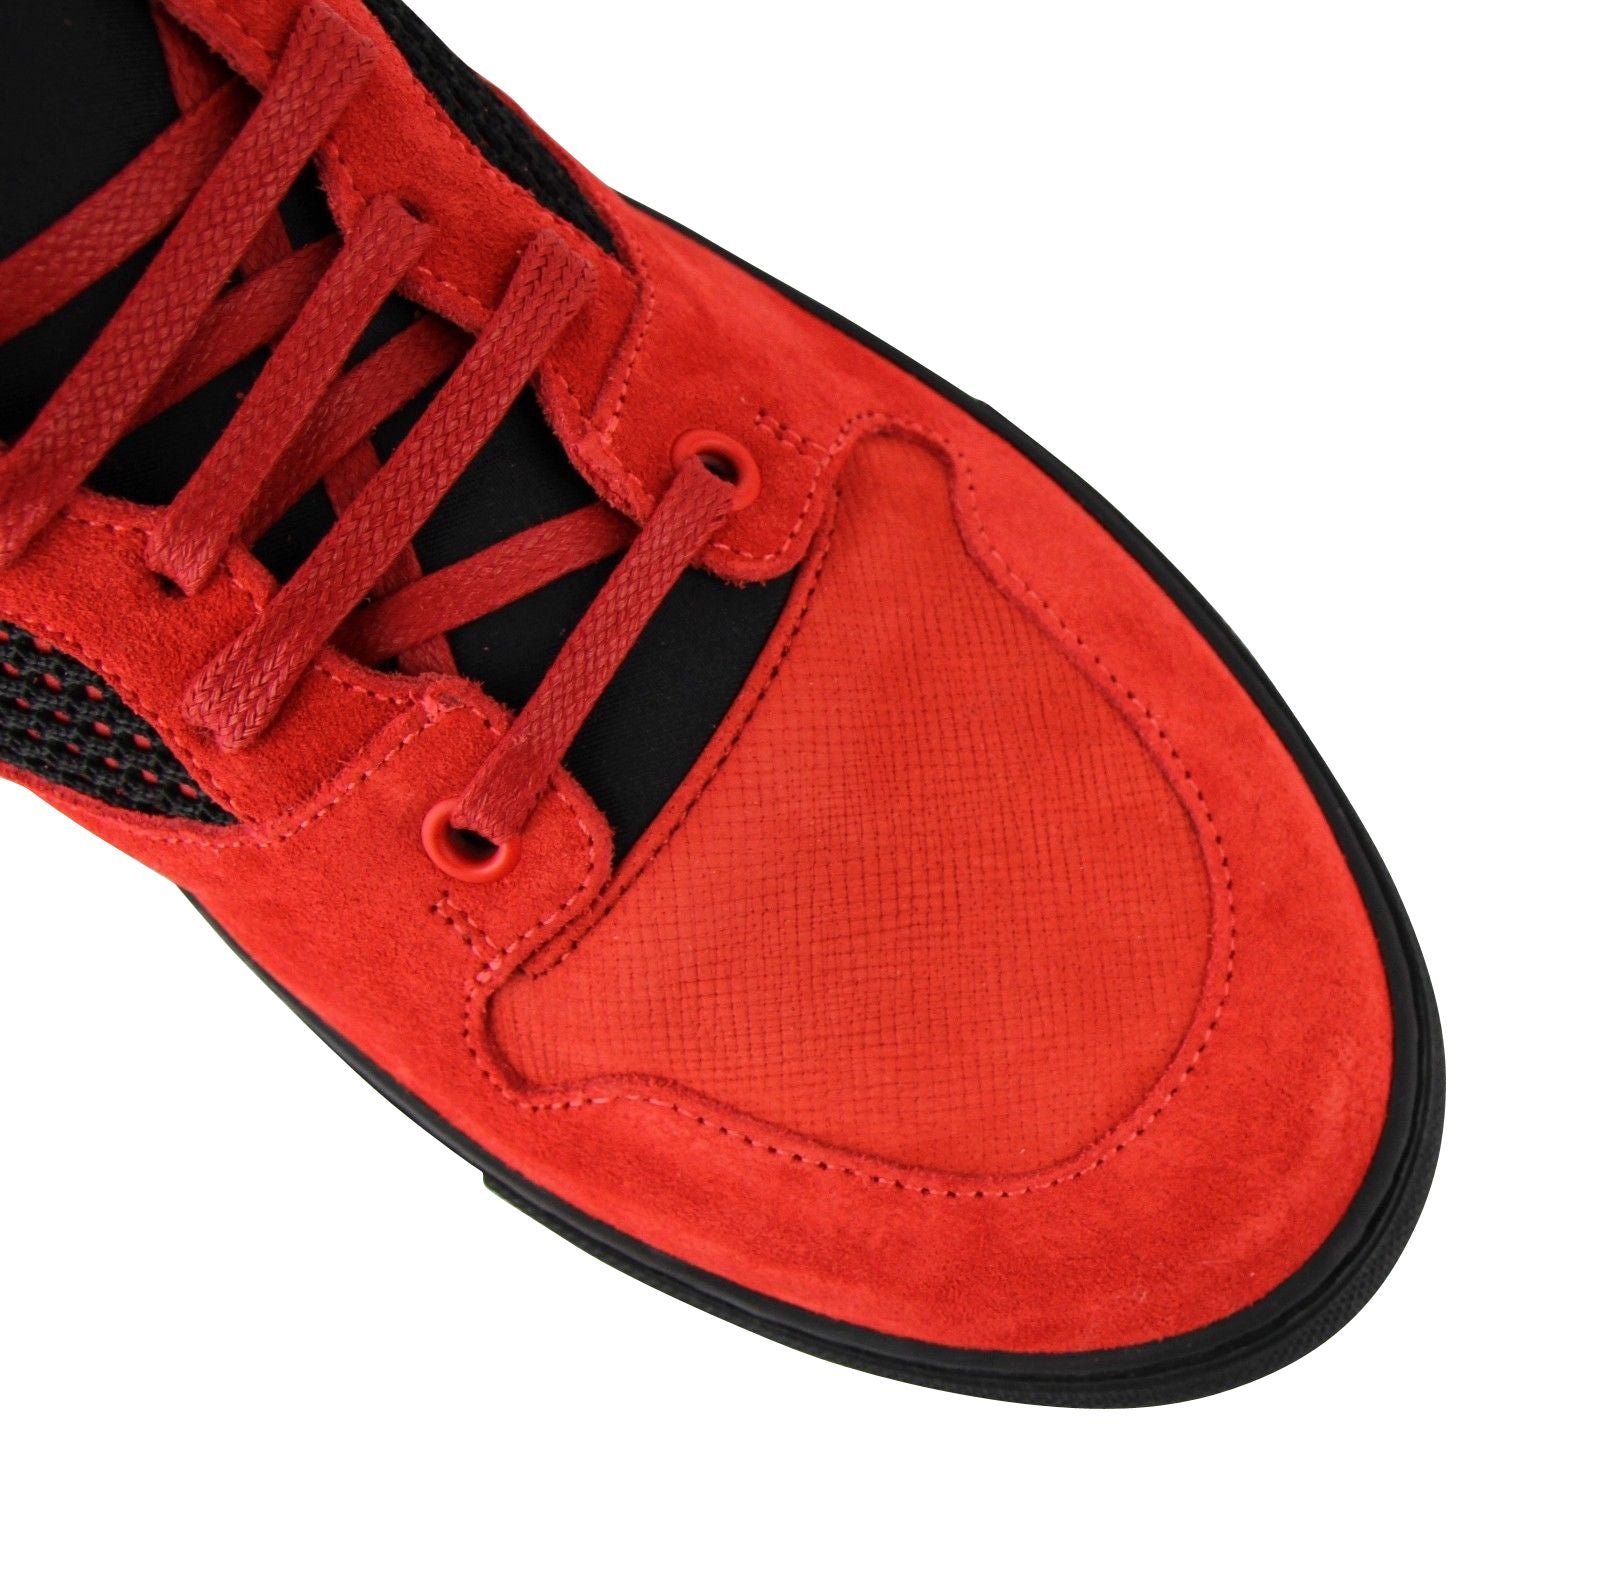 Balenciaga Balenciaga Men High Top Black Red Suede Leather Sneakers